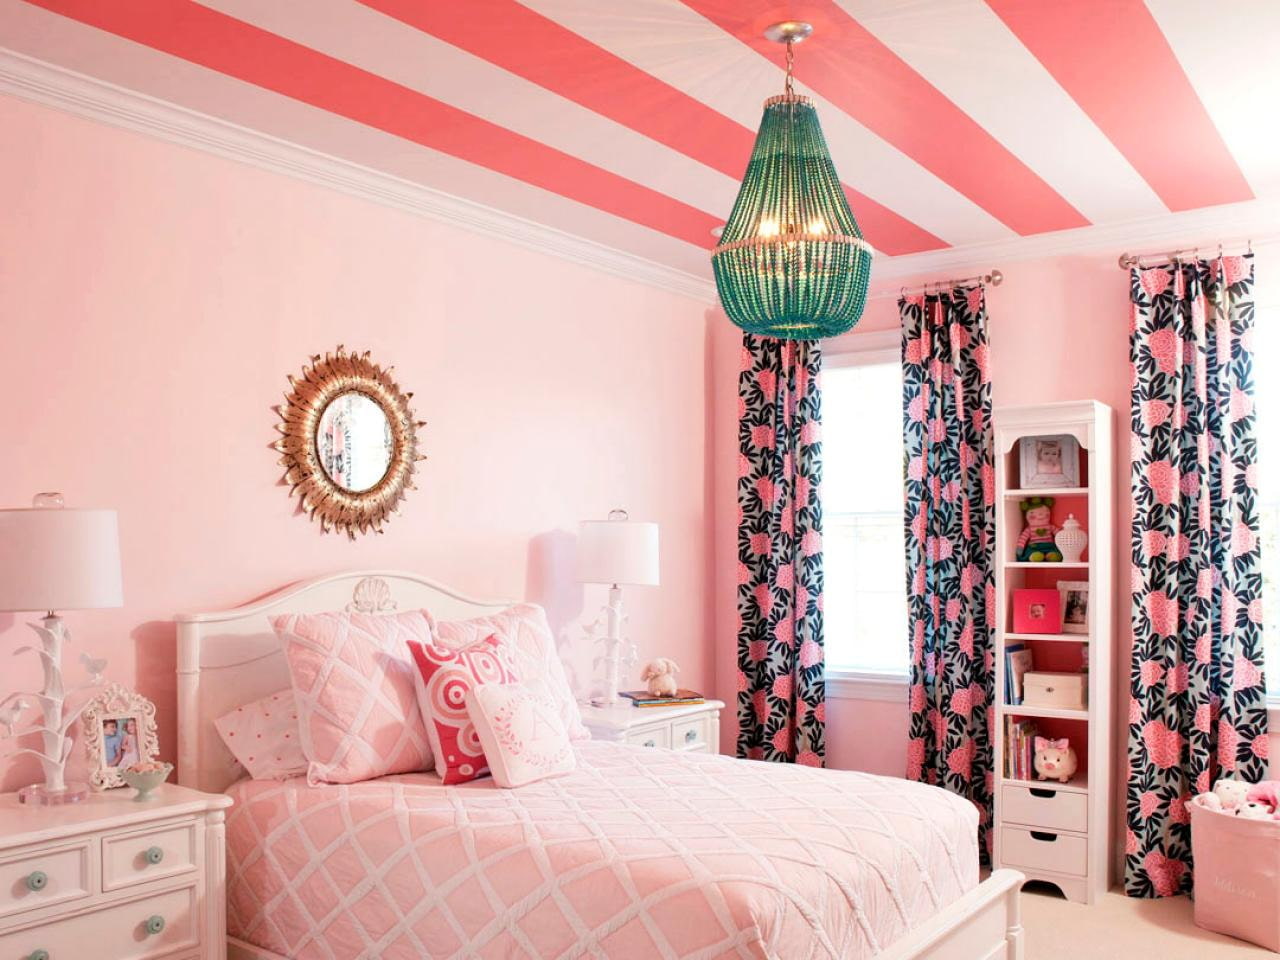 Розовые обои в интерьере спальни, гостиной, кухни - фото